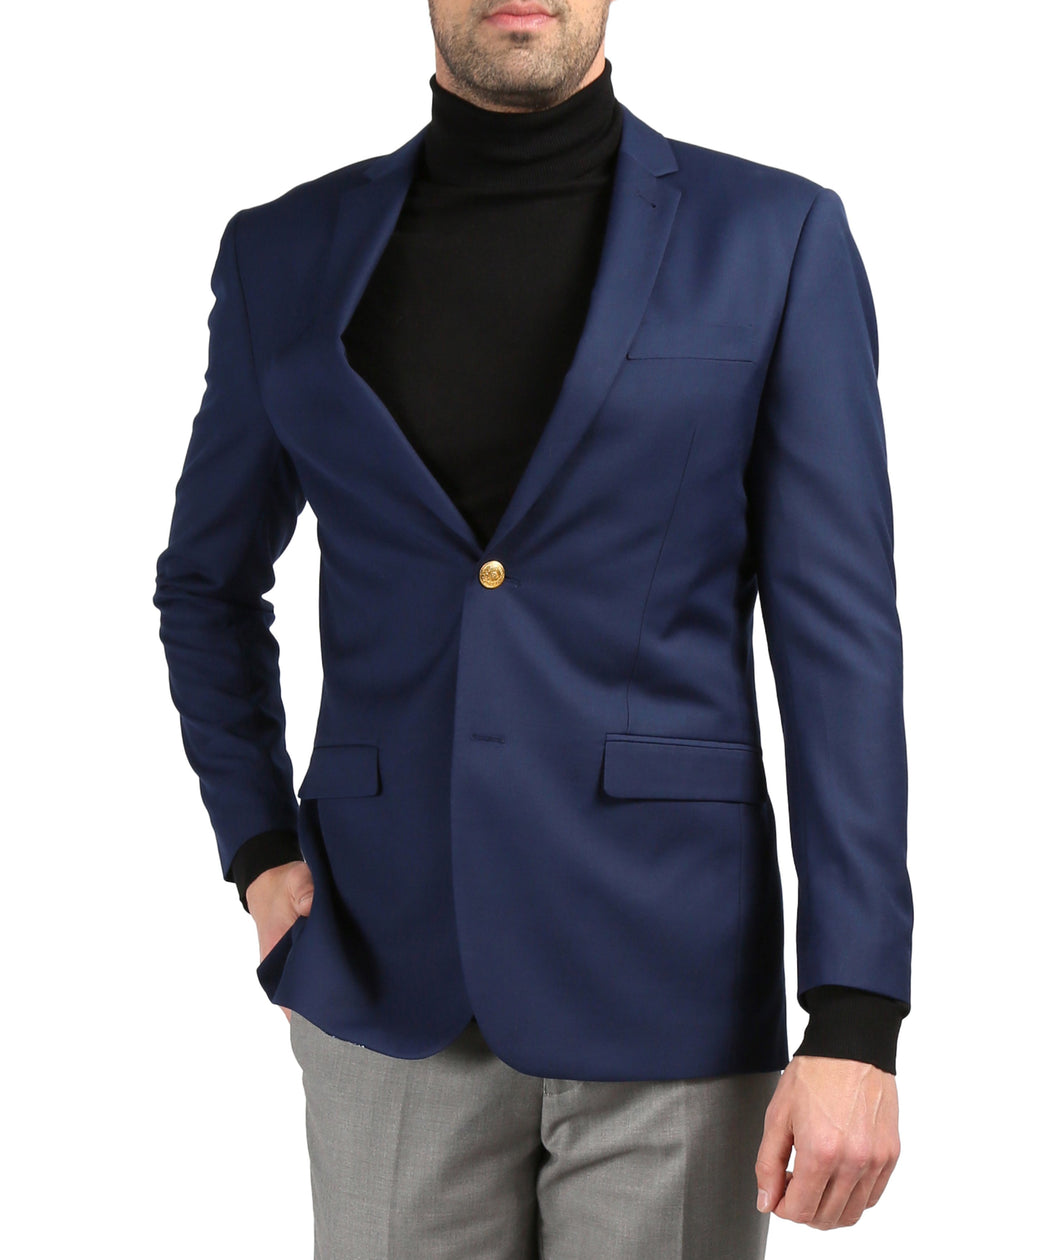 Men's Warwick Gold Button Slim Fit Navy Blazer - Ferrecci USA 